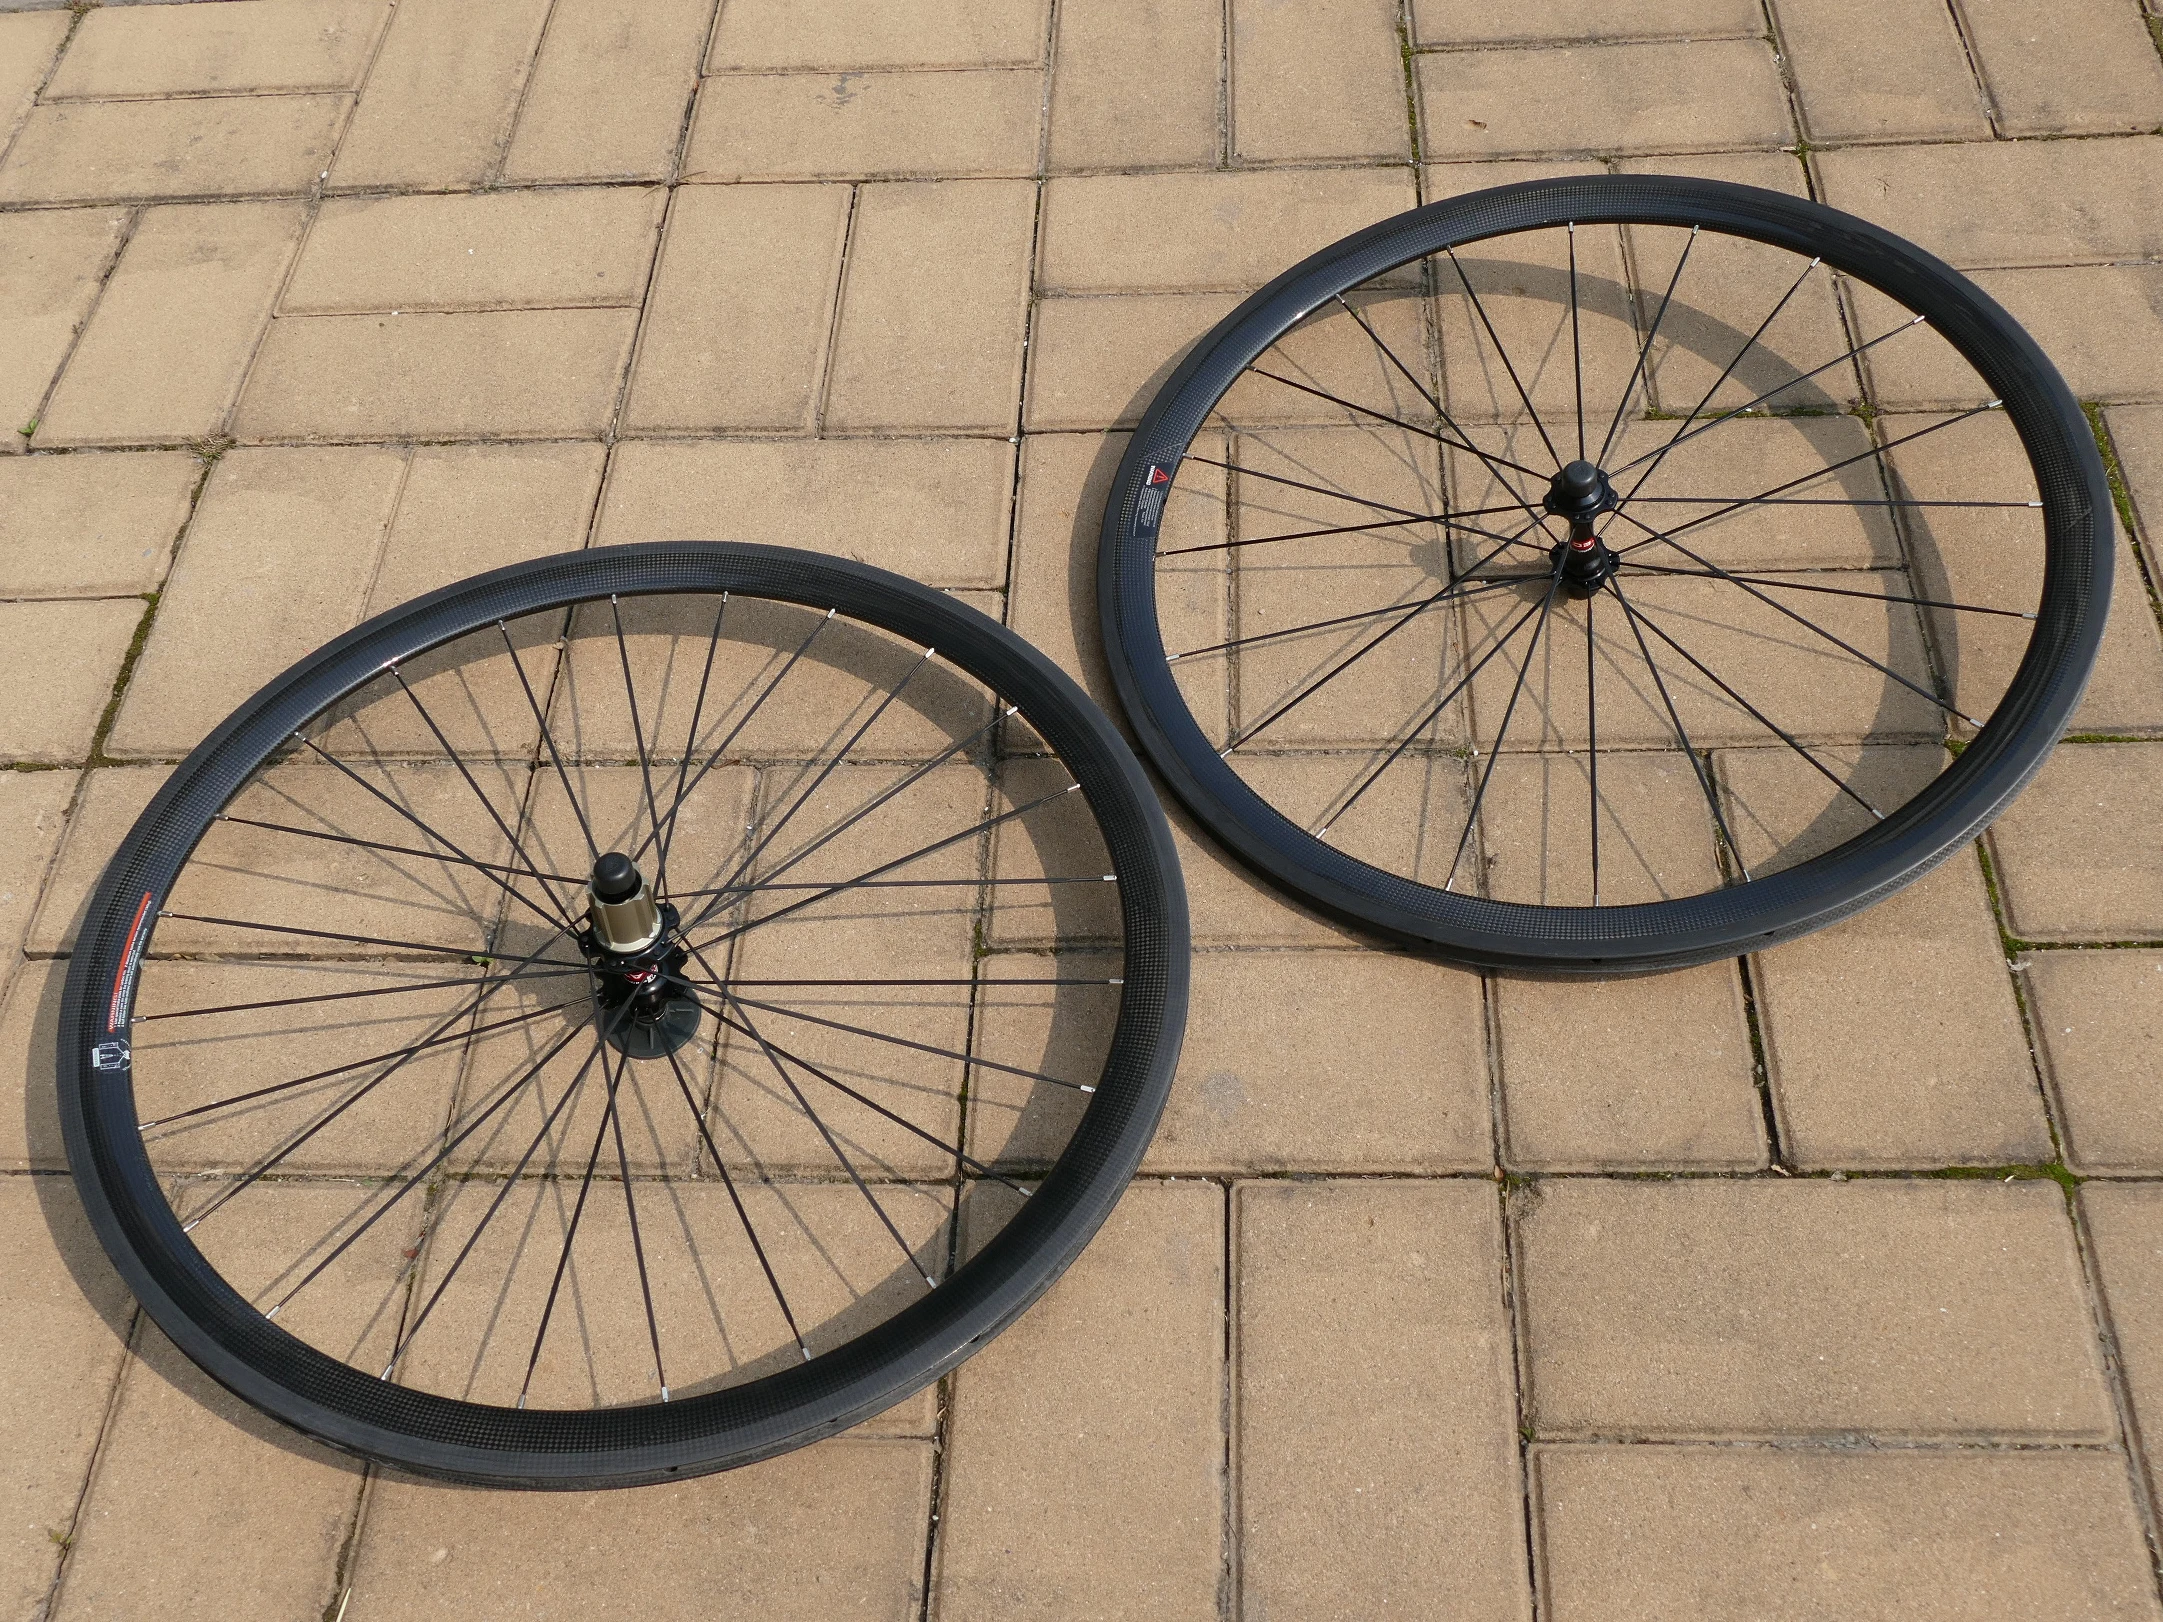 

TW3 High Quality Brand New Full Carbon Road Bike Tubular Wheelset (Basalt Brake Side) Wheel Rim Depth 38mm Width 23mm